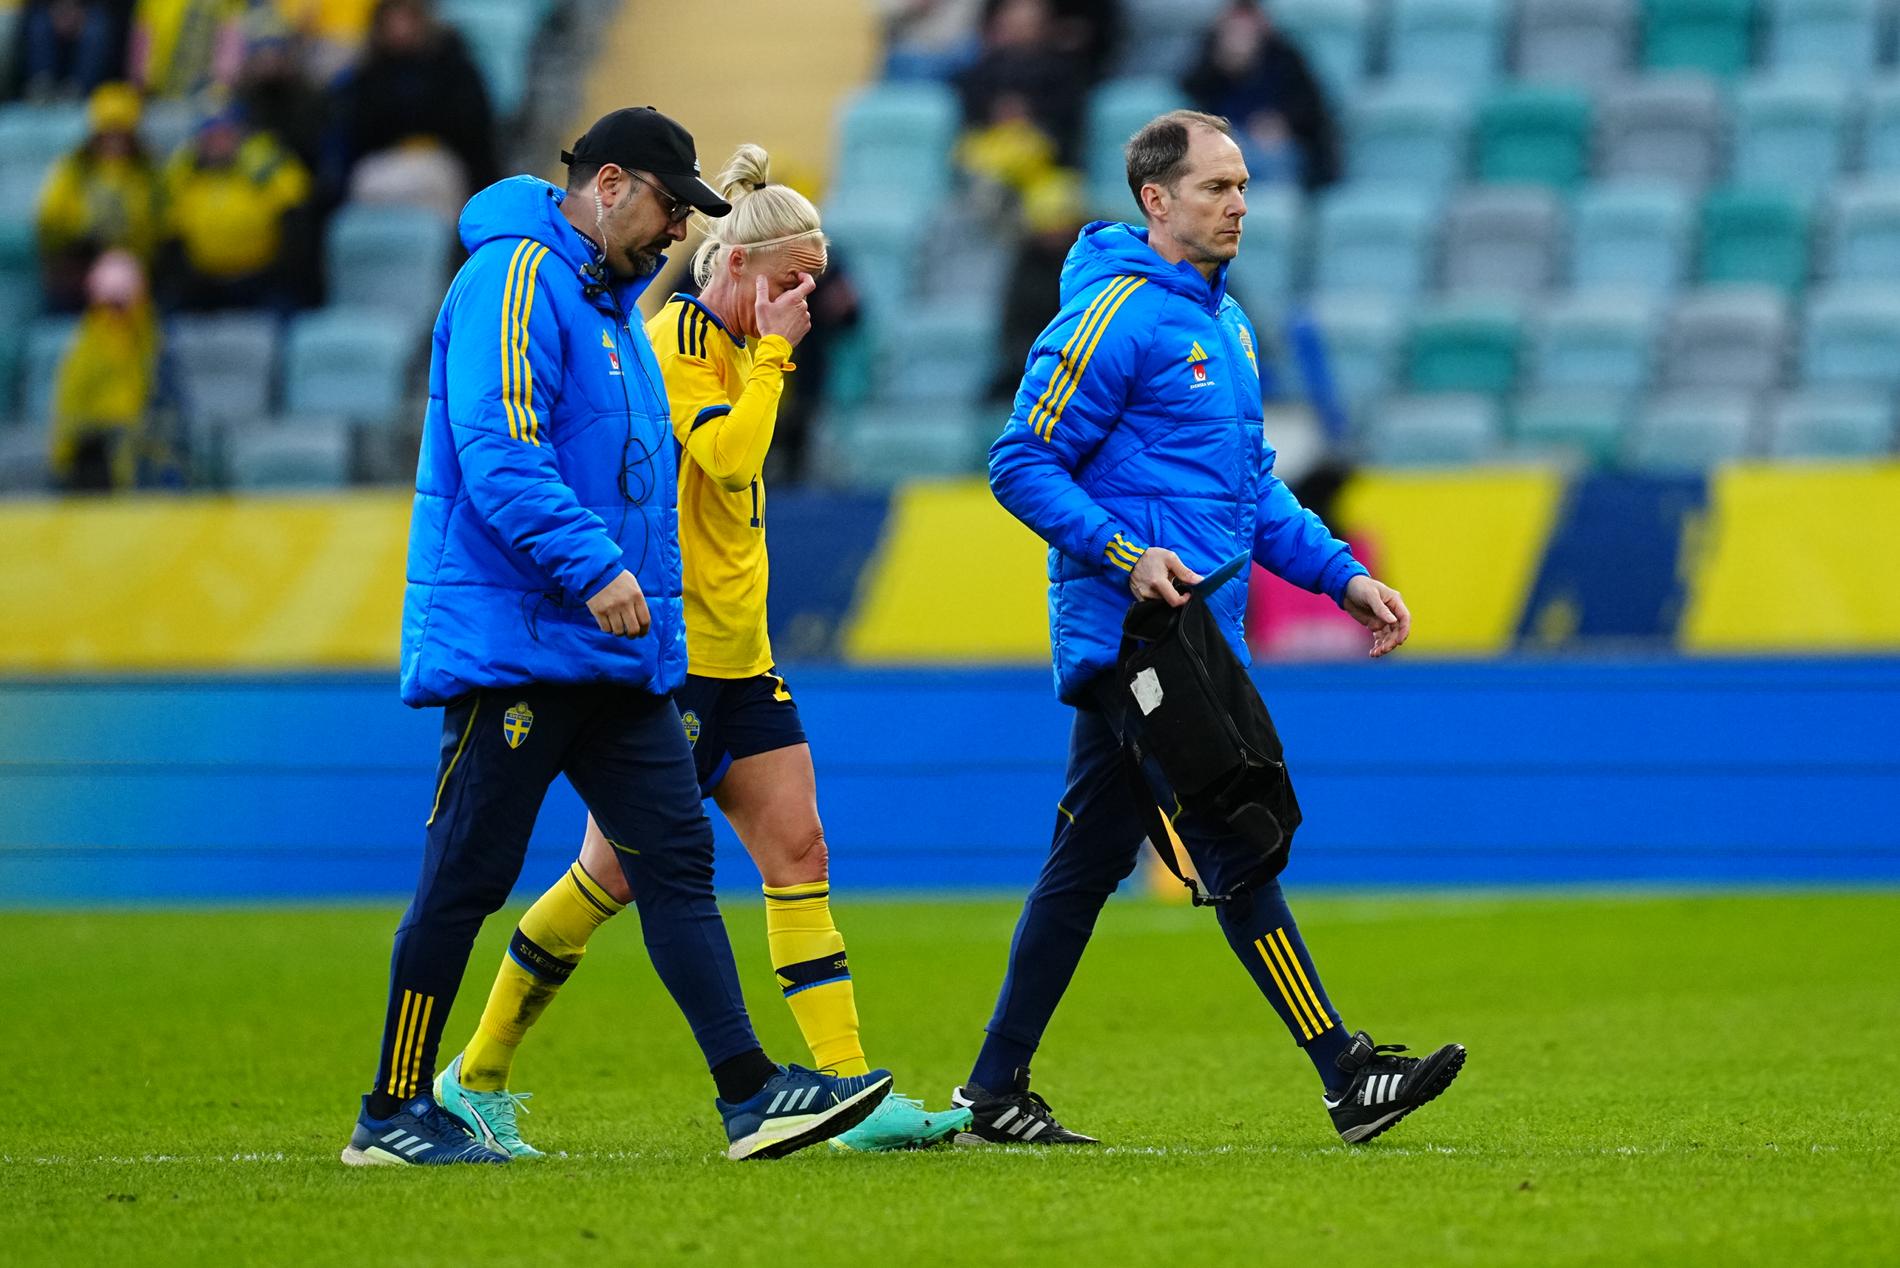 Caroline Seger fick kliva av landskampen mot Norge med en skada